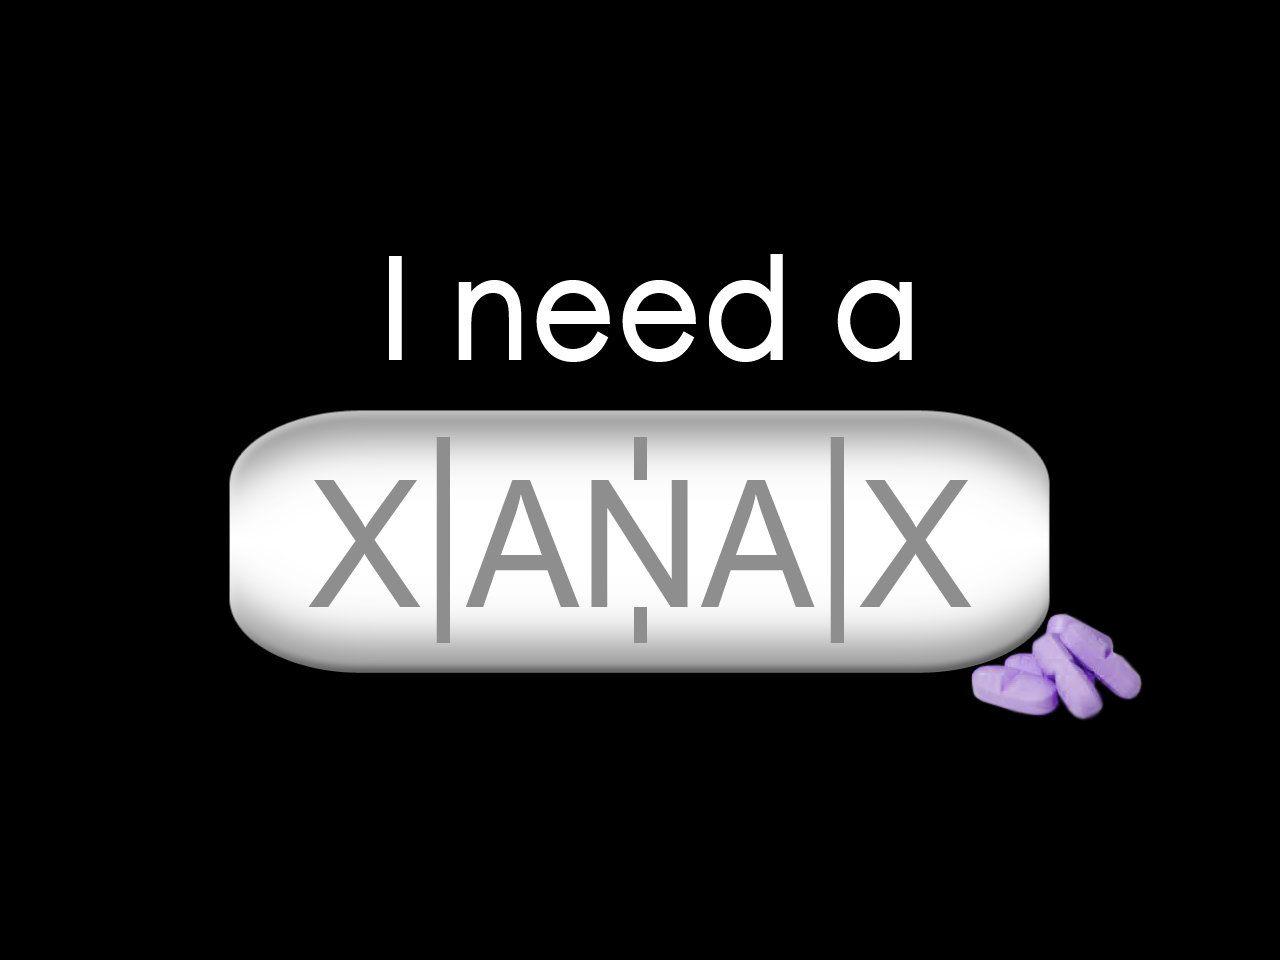 I need a XANAX